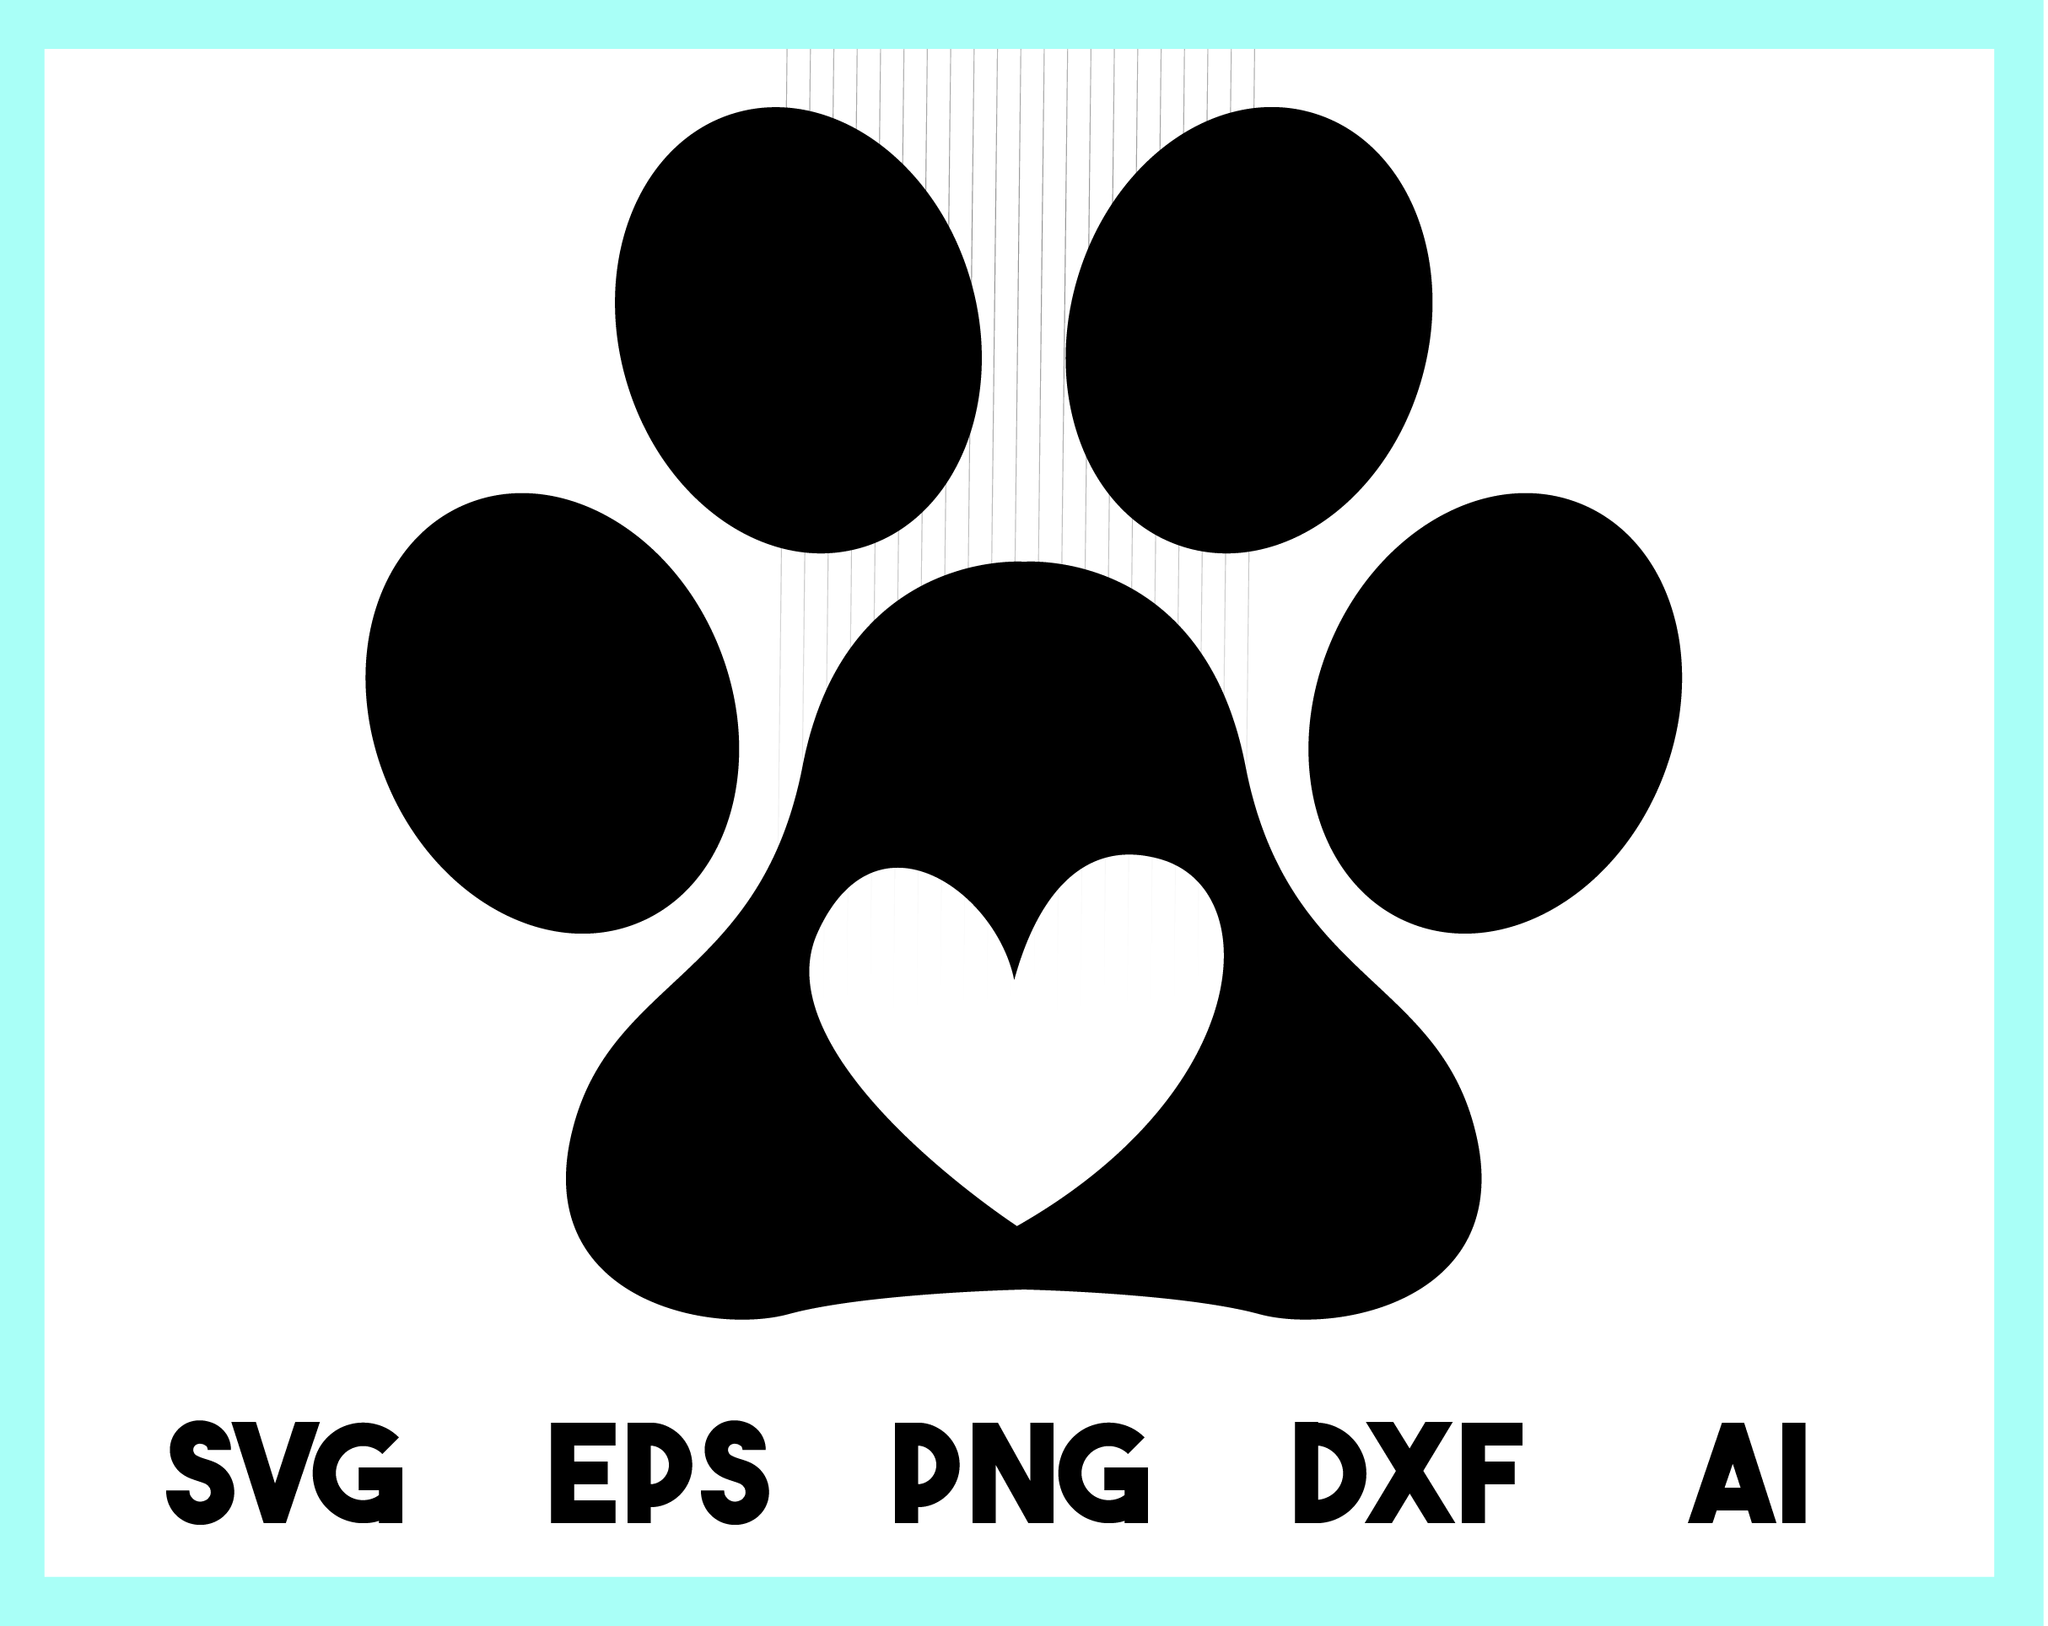 Dog Paw Svg File Free - Layered SVG Cut File